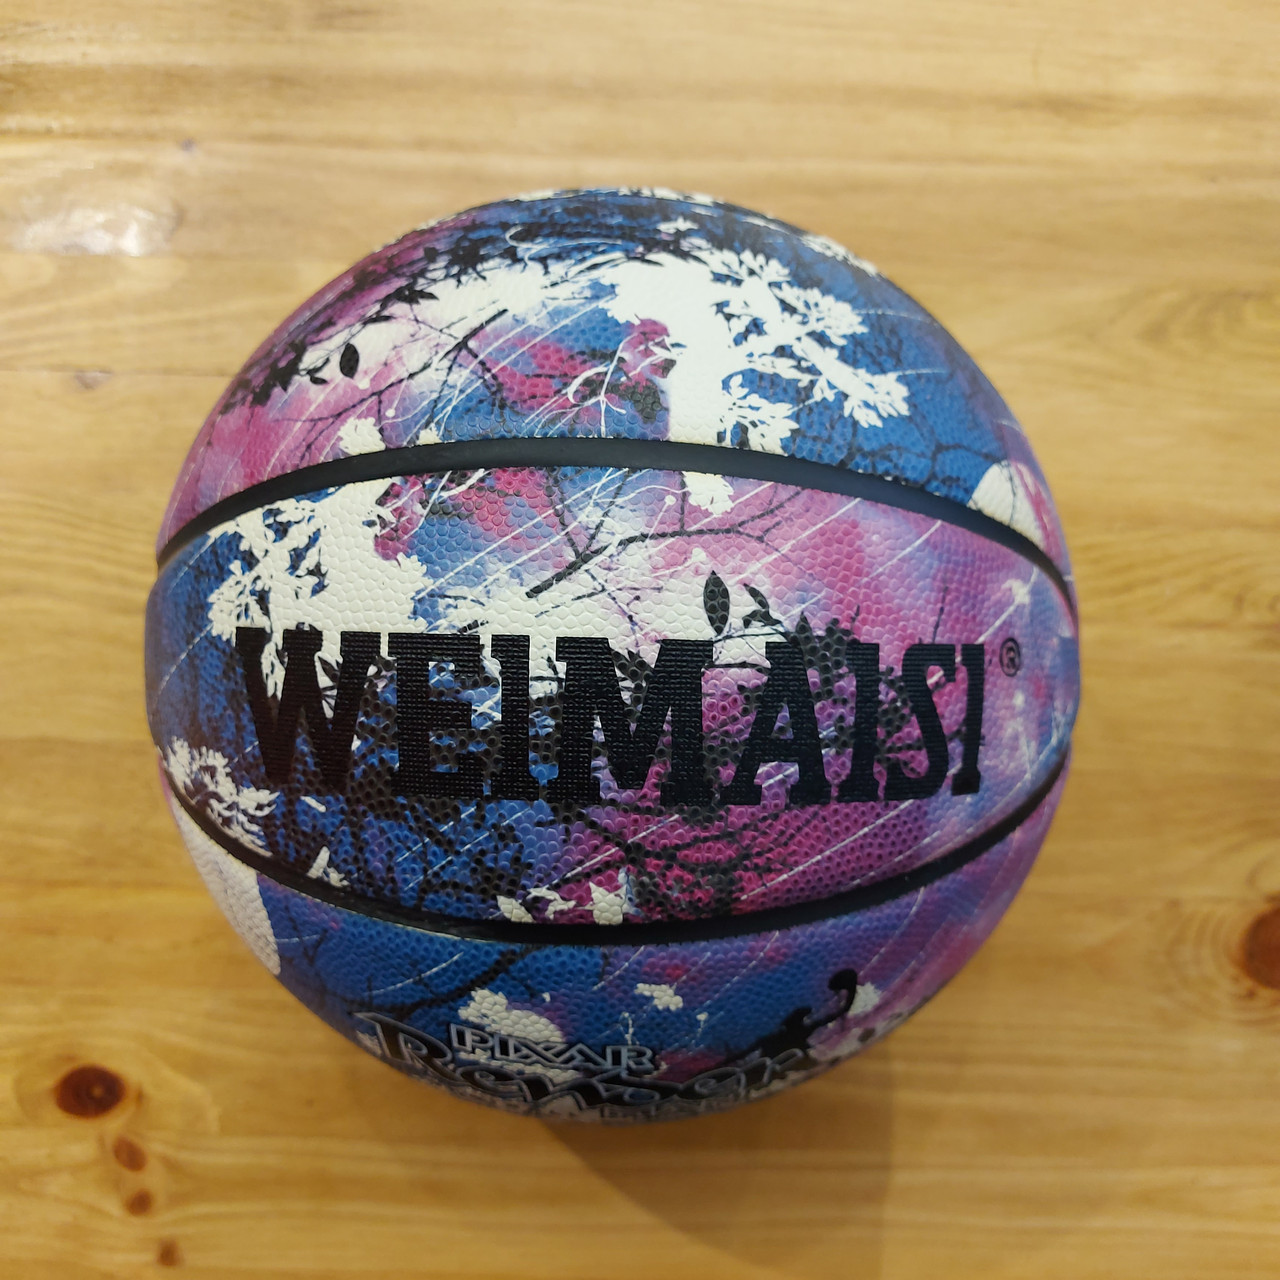 Светящийся в темноте Баскетбольный мяч "WEIMAISI". Размер 7. Для зала и улицы. Фиолетовый.